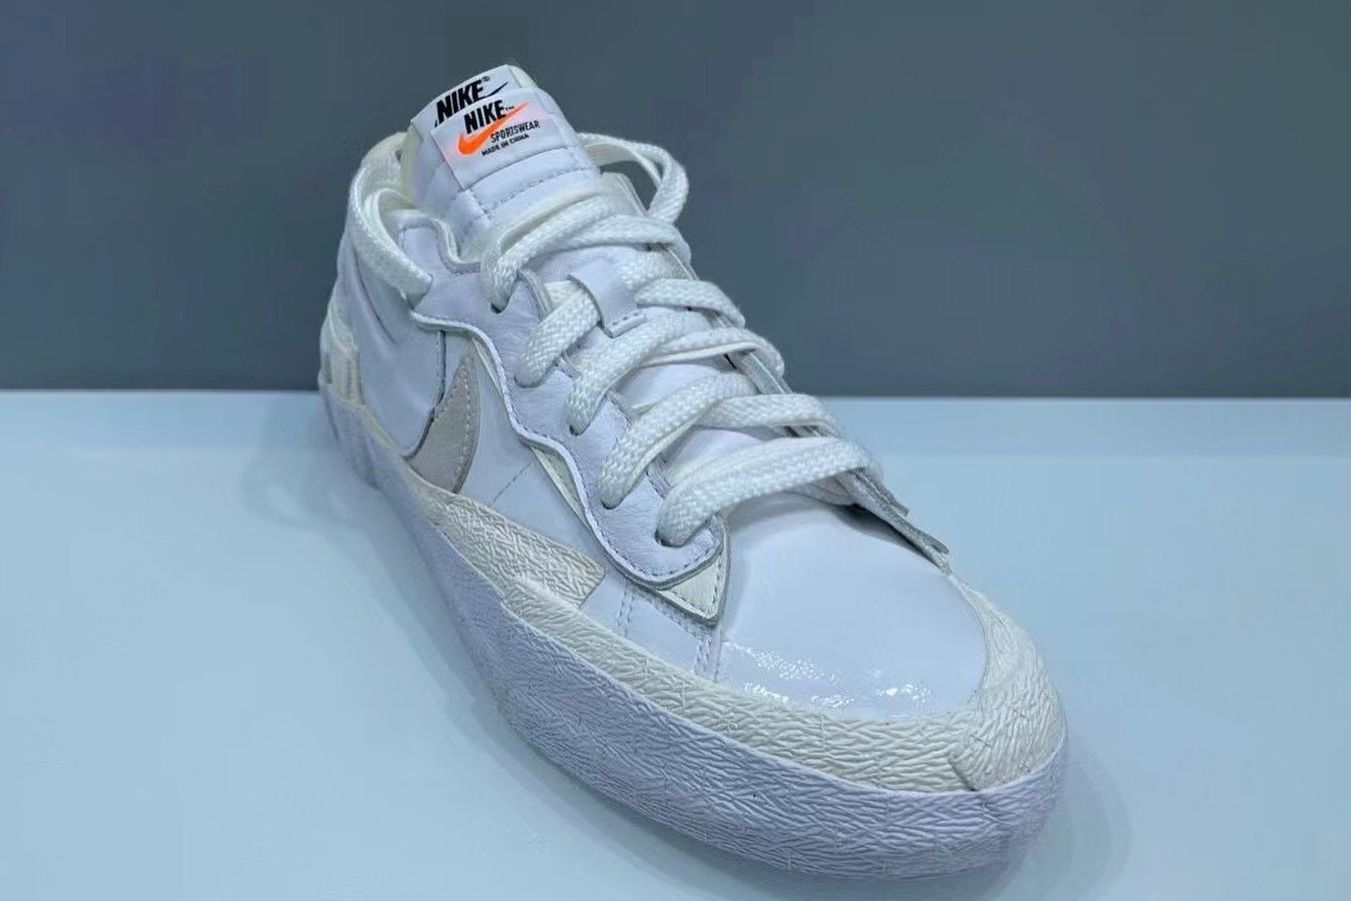 Release Info: sacai x Nike Blazer Low 'White/Grey' DM6443-100 